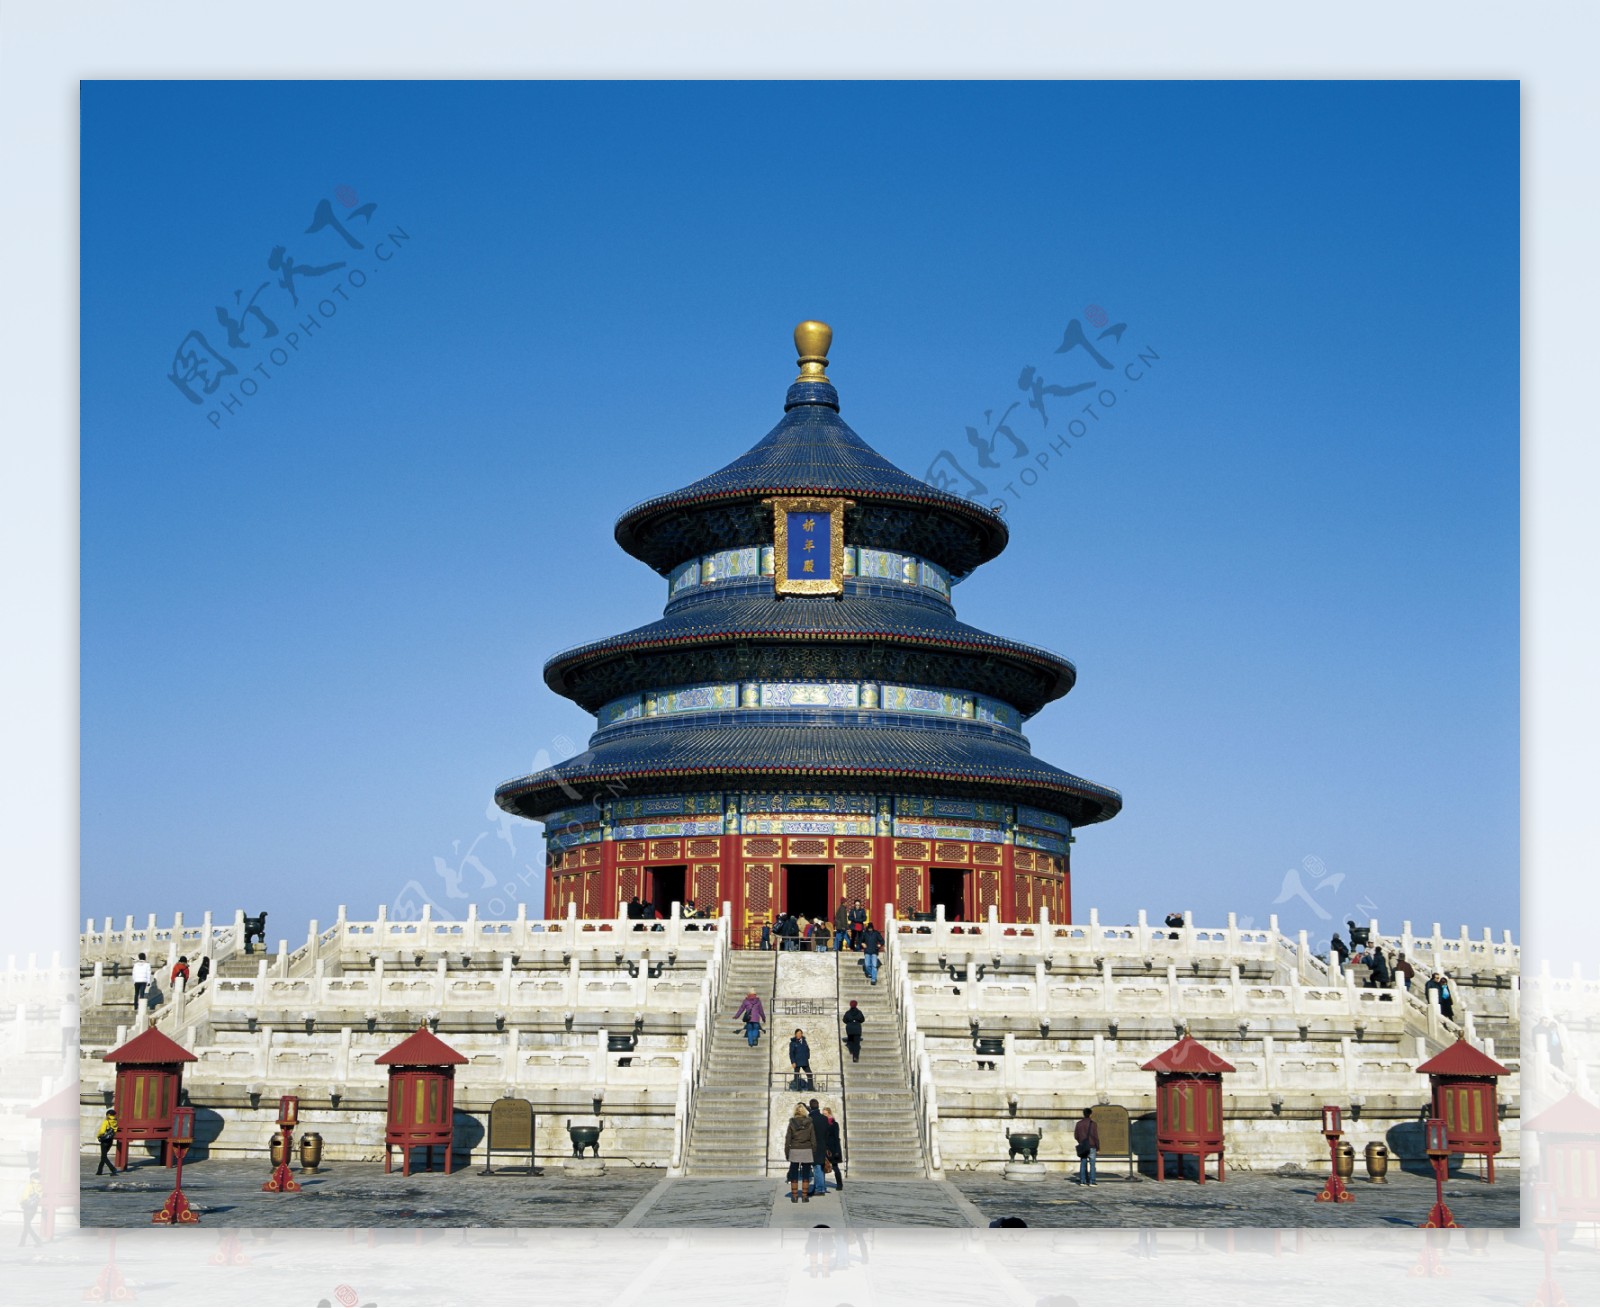 北京风光巨幅故宫图片